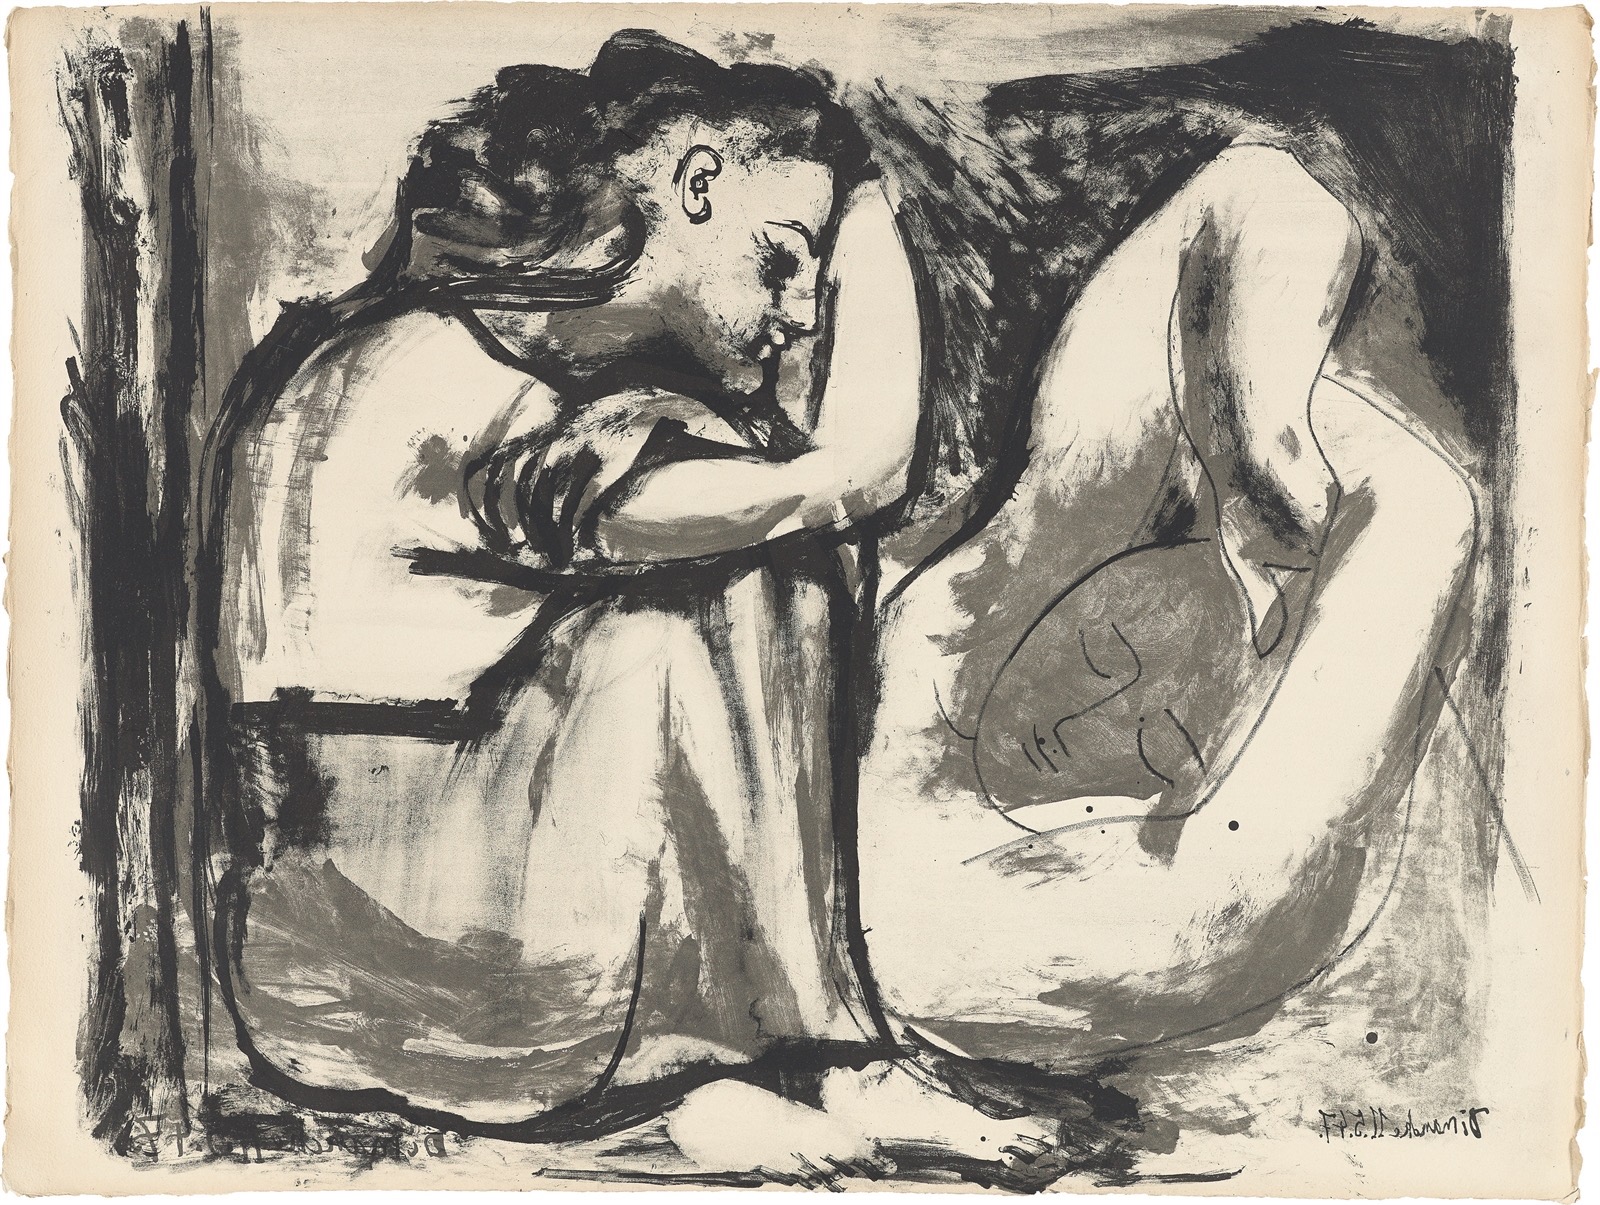 Pablo Picasso. ”Femme assise et dormeuse”. 1947